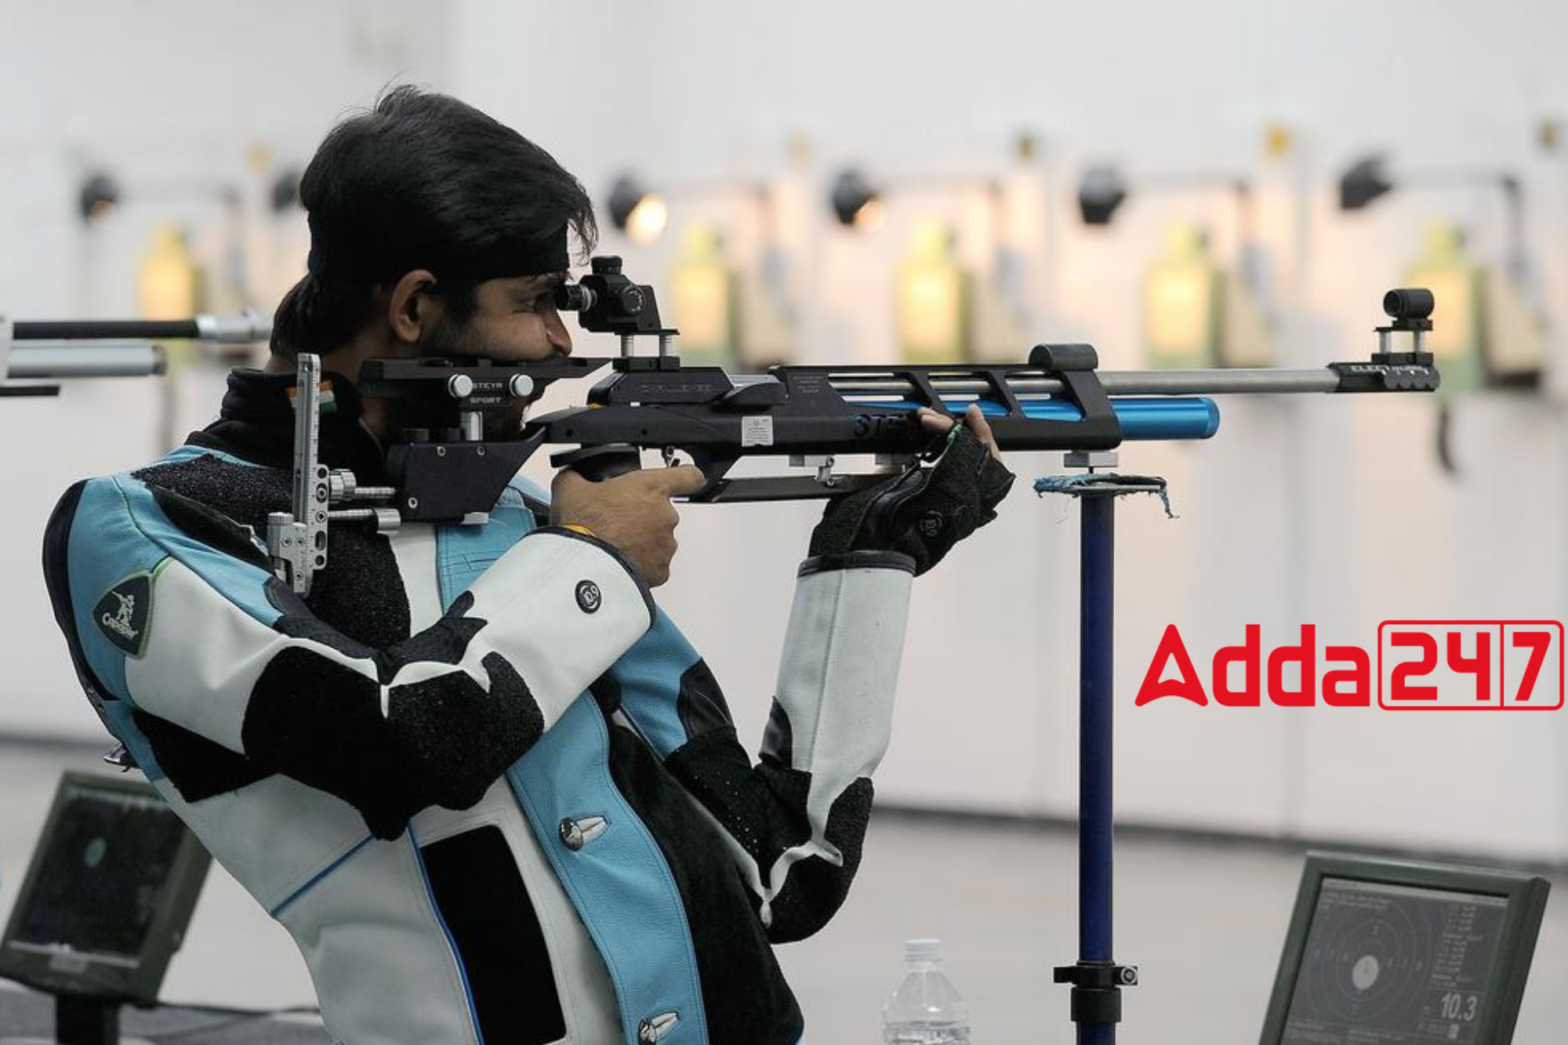 Divyansh Singh Panwar Clinches ISSF World Cup Gold In 10m Air Rifle Event